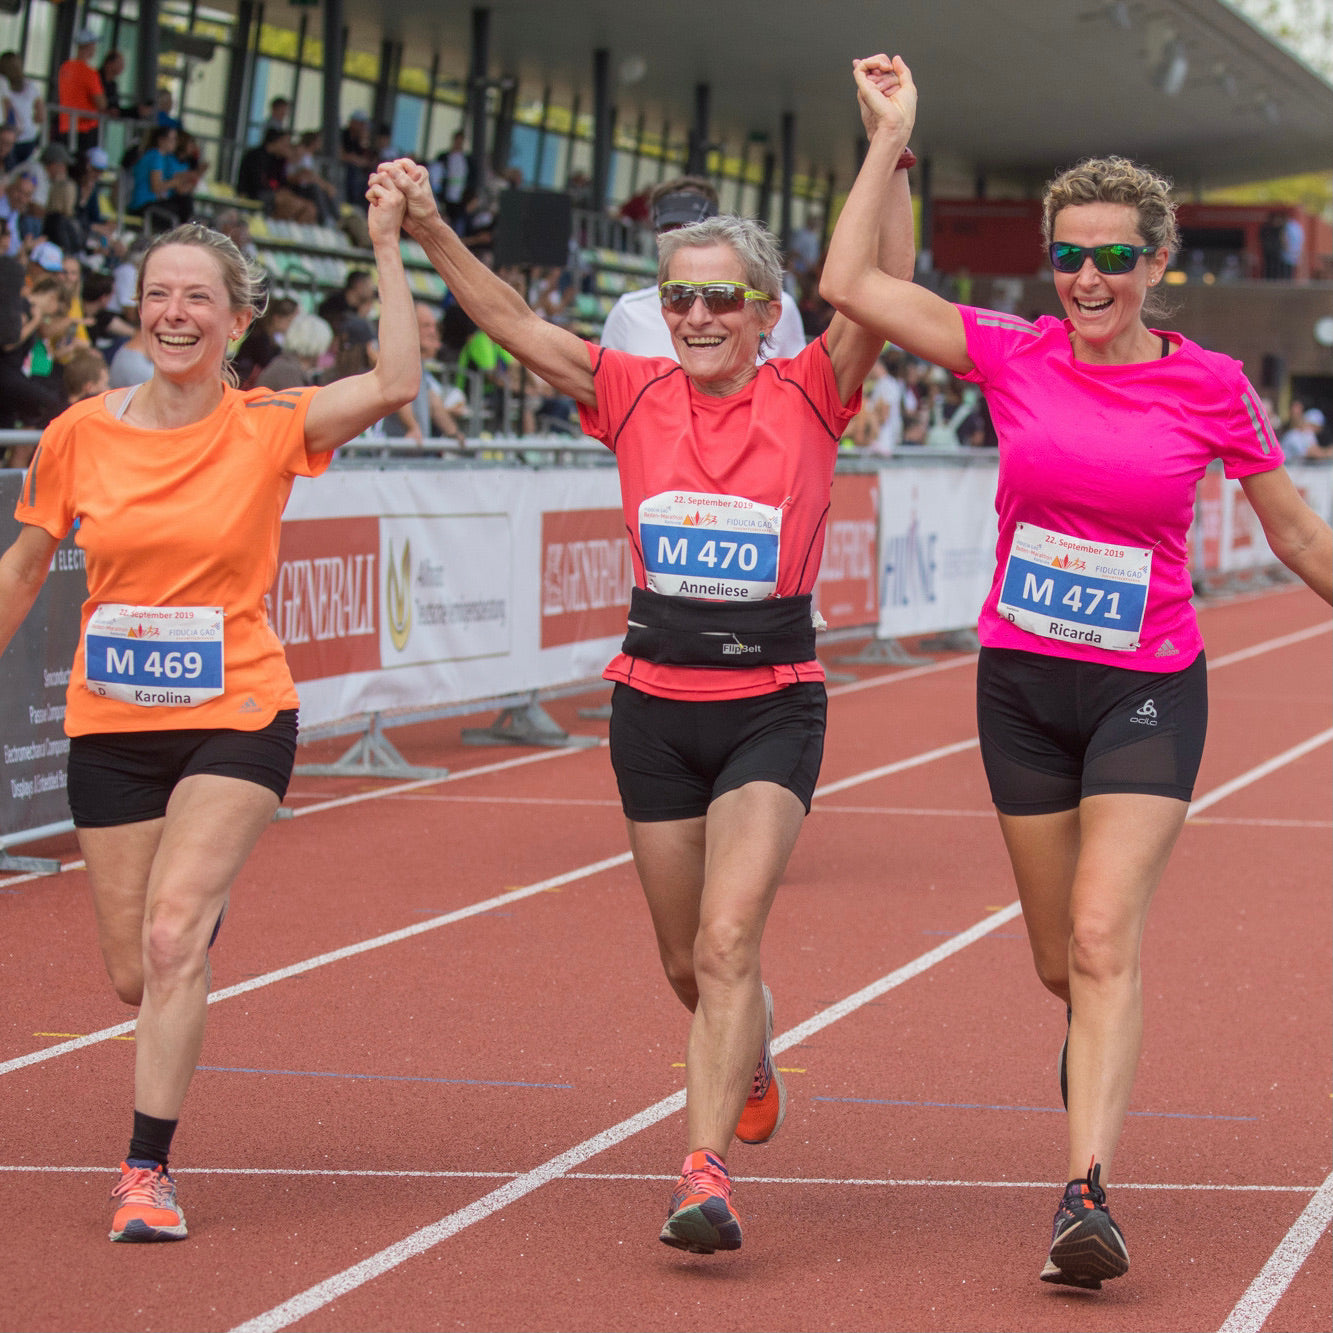 Drei Läuferinnen, die durch das Trainieren von langsam Laufen schneller geworden sind.